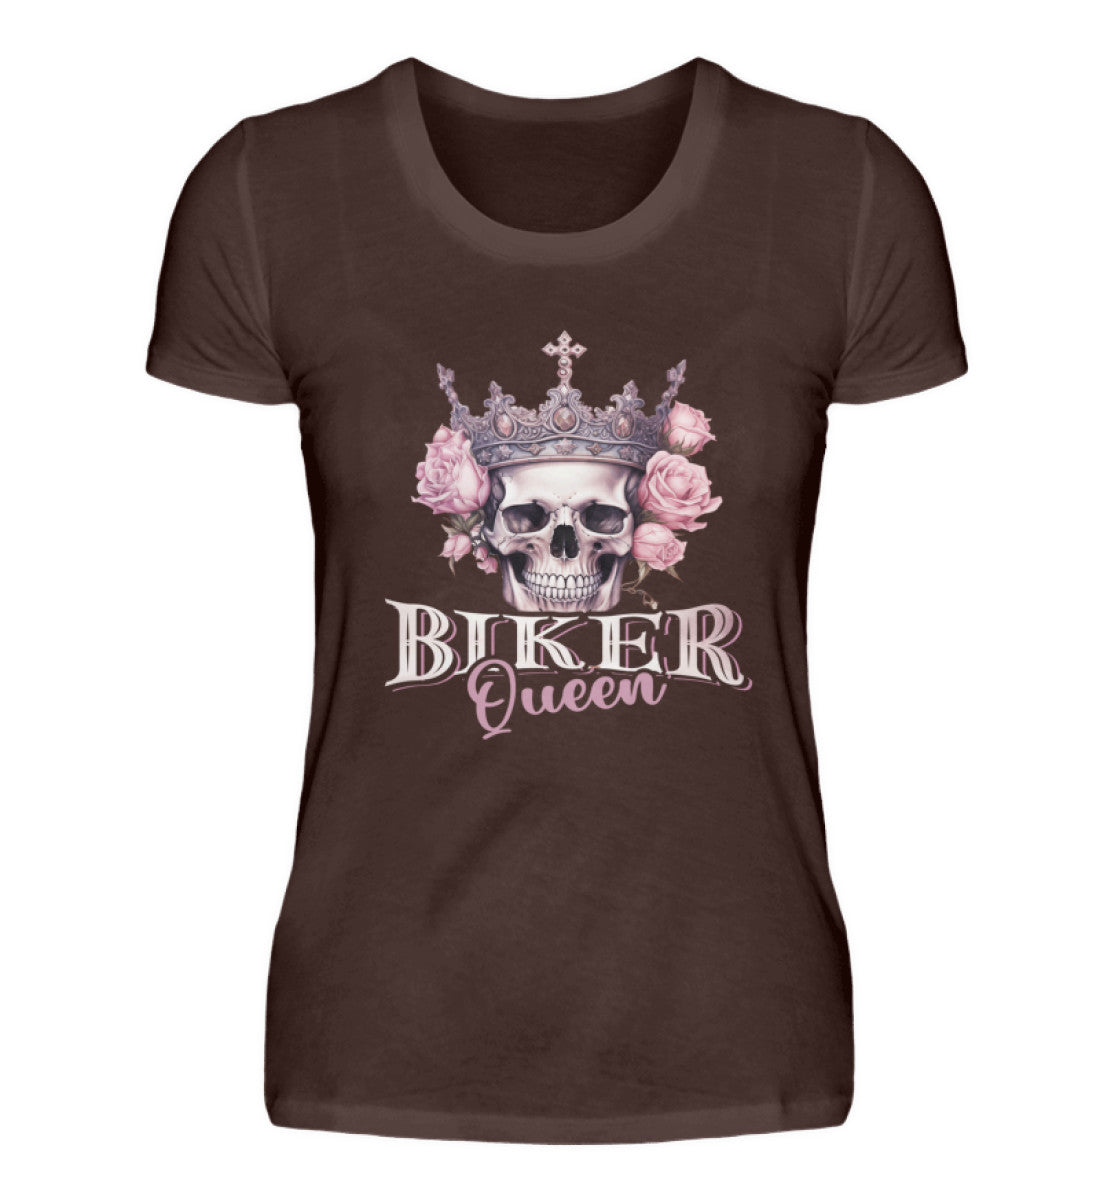 Ein Bikerin T-Shirt für Motorradfahrerinnen von Wingbikers mit dem Aufdruck, Biker Queen - in braun.